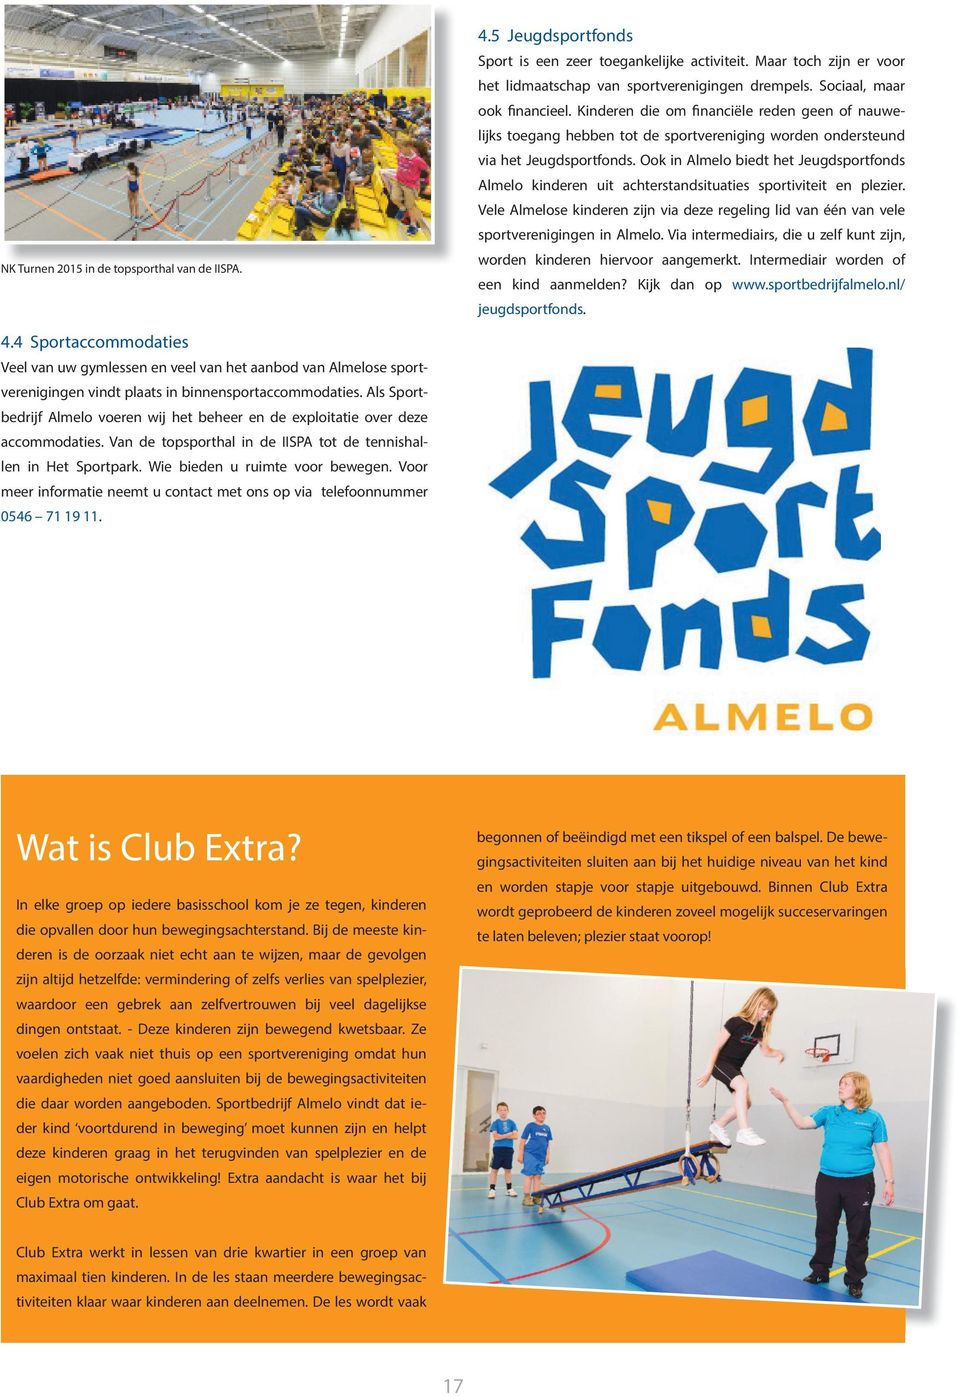 Ook in Almelo biedt het Jeugdsportfonds Almelo kinderen uit achterstandsituaties sportiviteit en plezier.